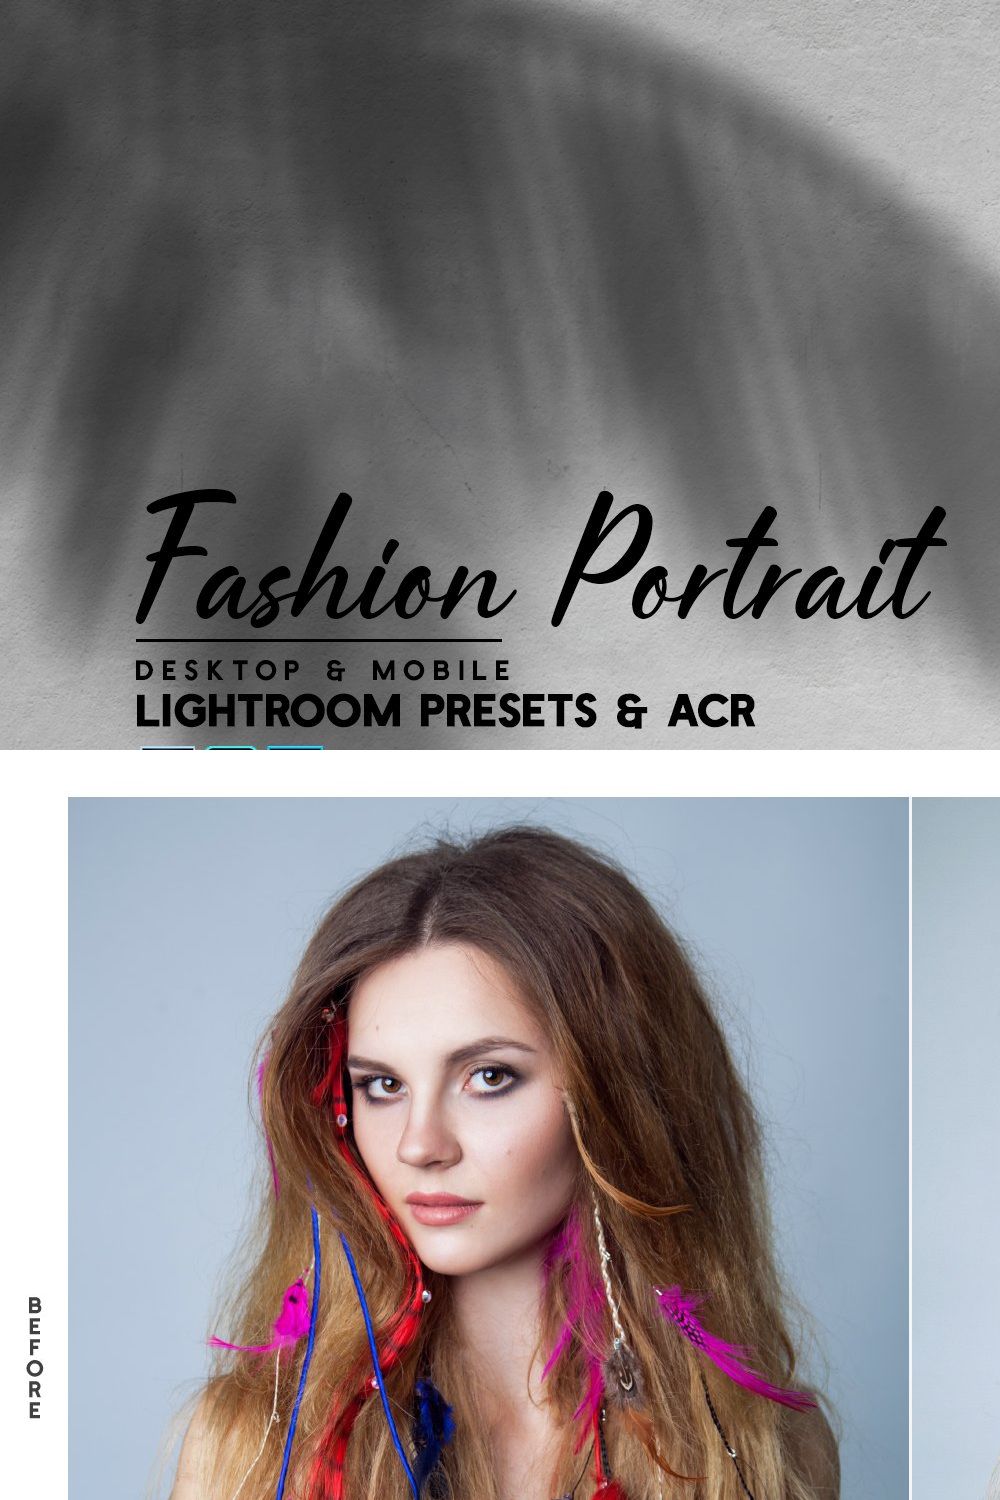 Fashion Portrait Lightroom & ACR pinterest preview image.